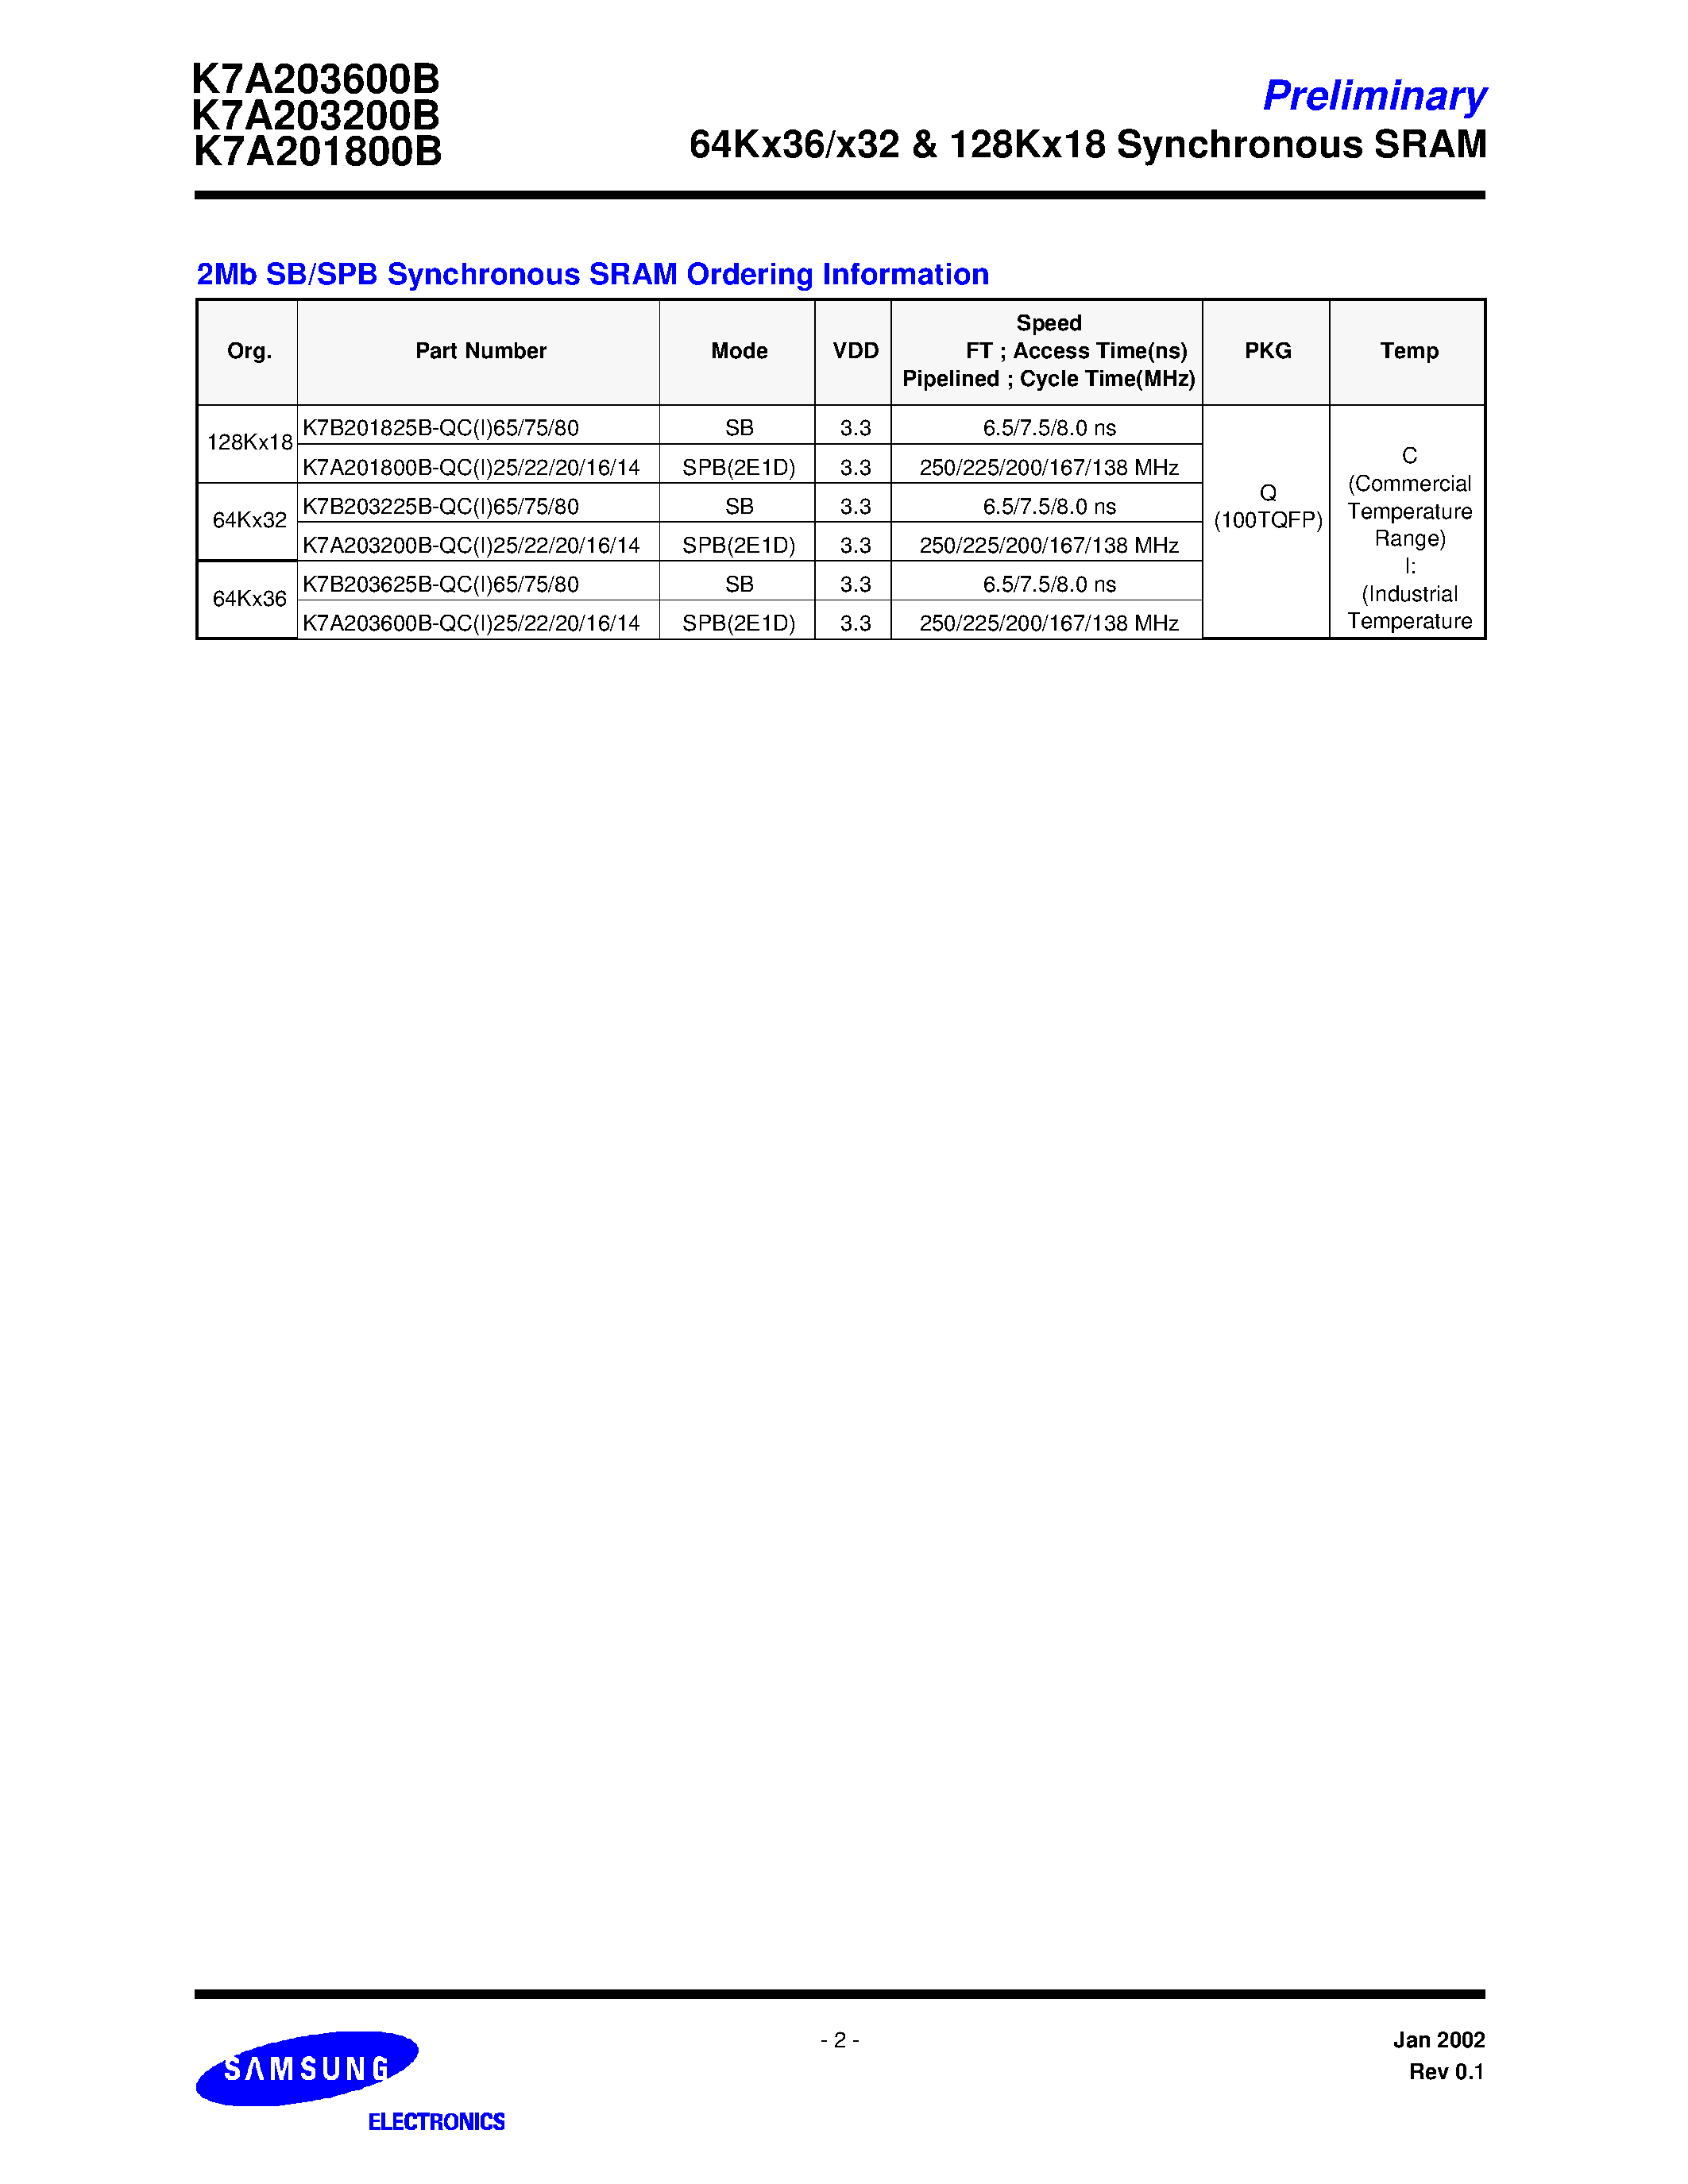 Даташит K7A203200B-QC(I)14 - 64Kx36 & 64Kx32-Bit Synchronous Pipelined Burst SRAM страница 2